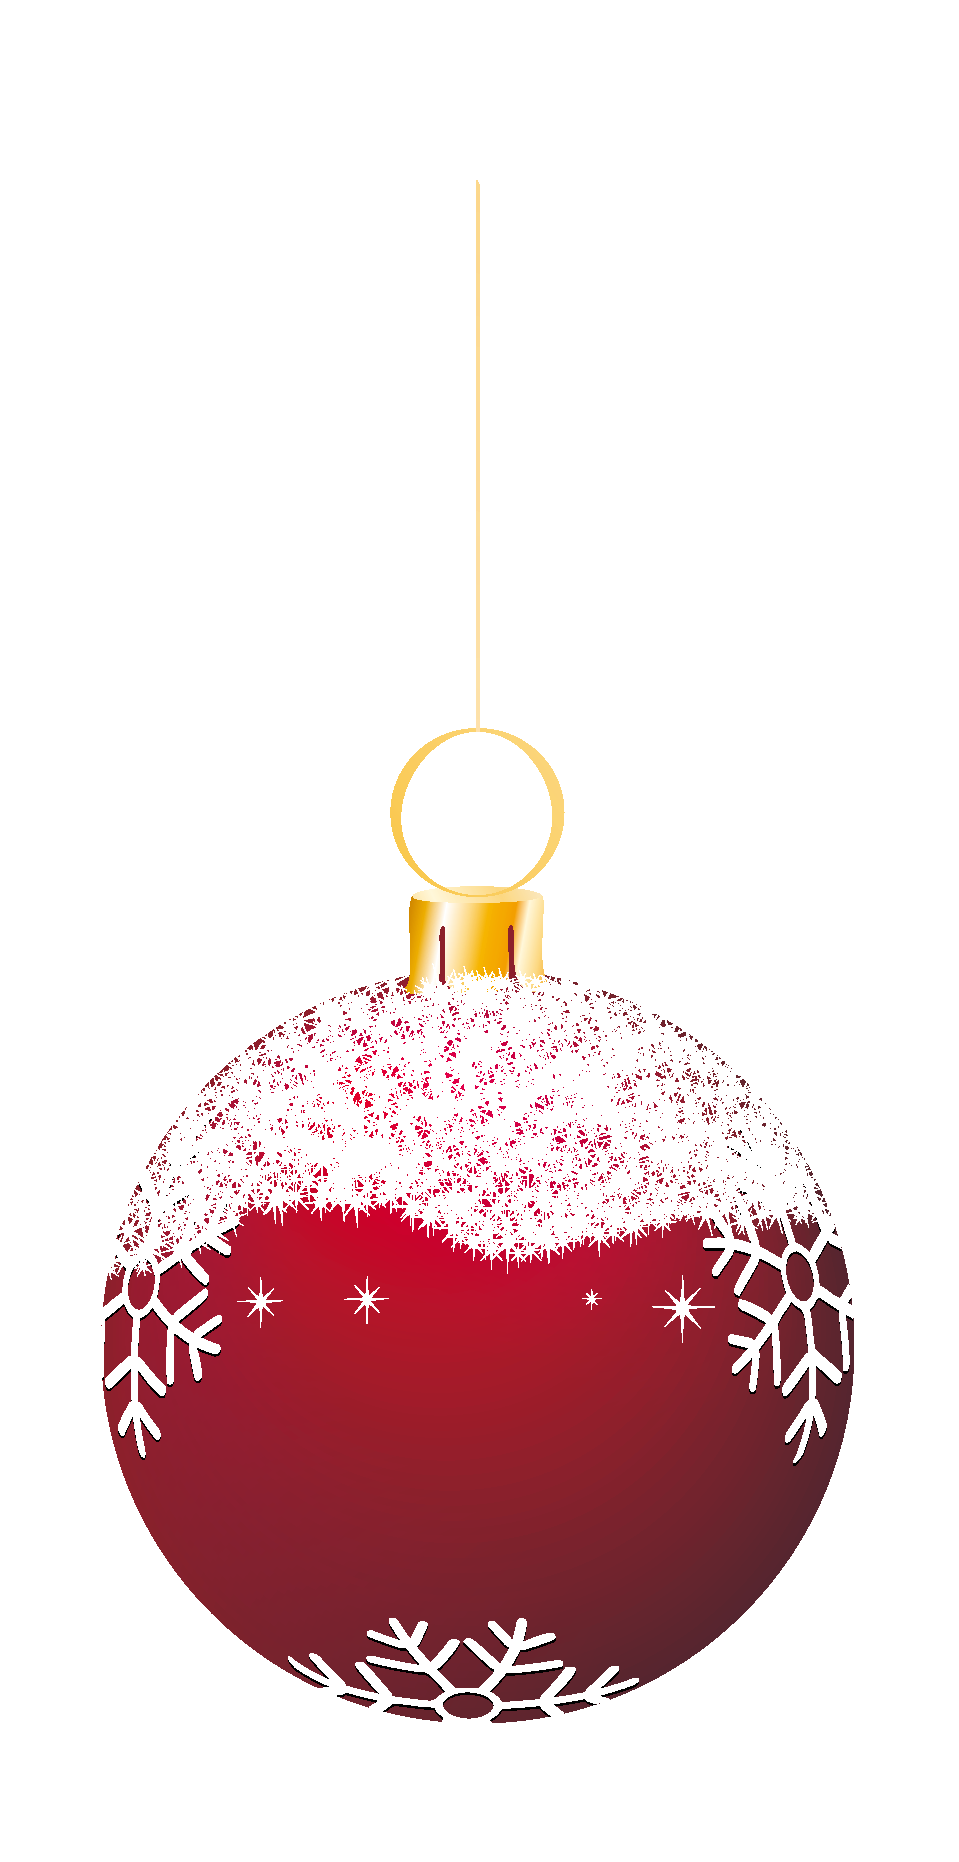 Red Christmas Ball with Snow PNG Transparent pngteam.com